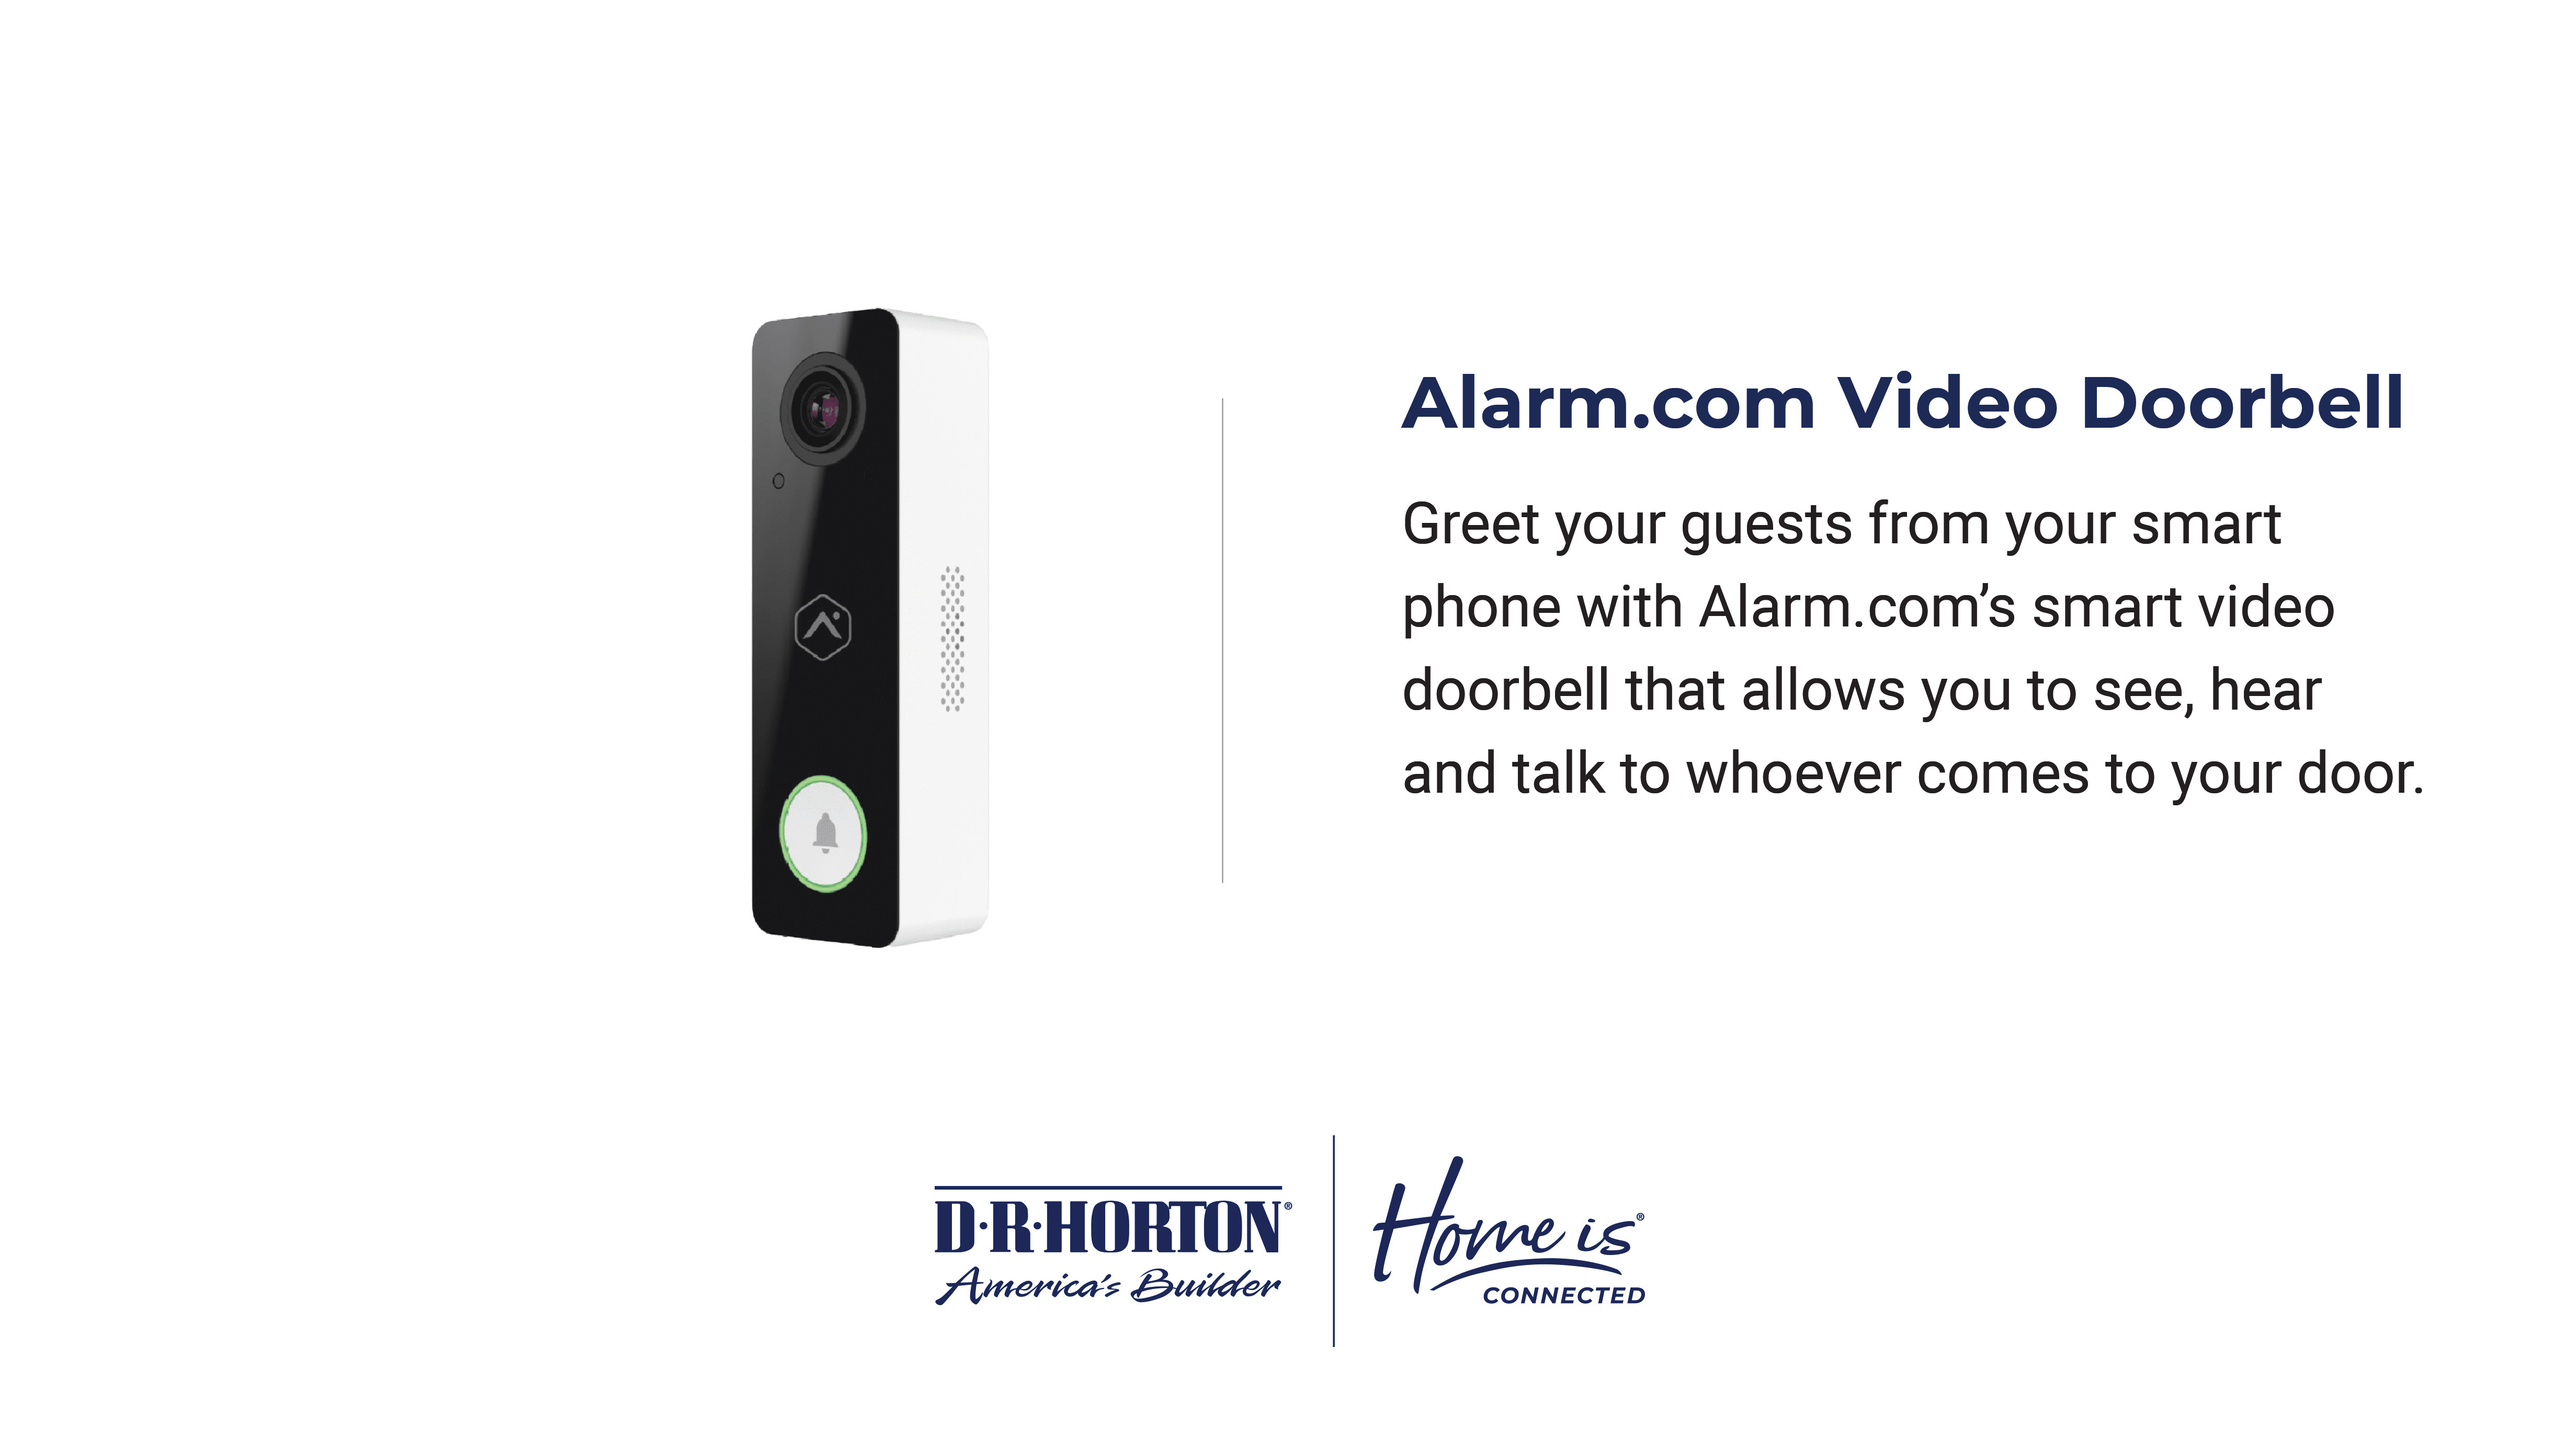 alarm.com video doorbell